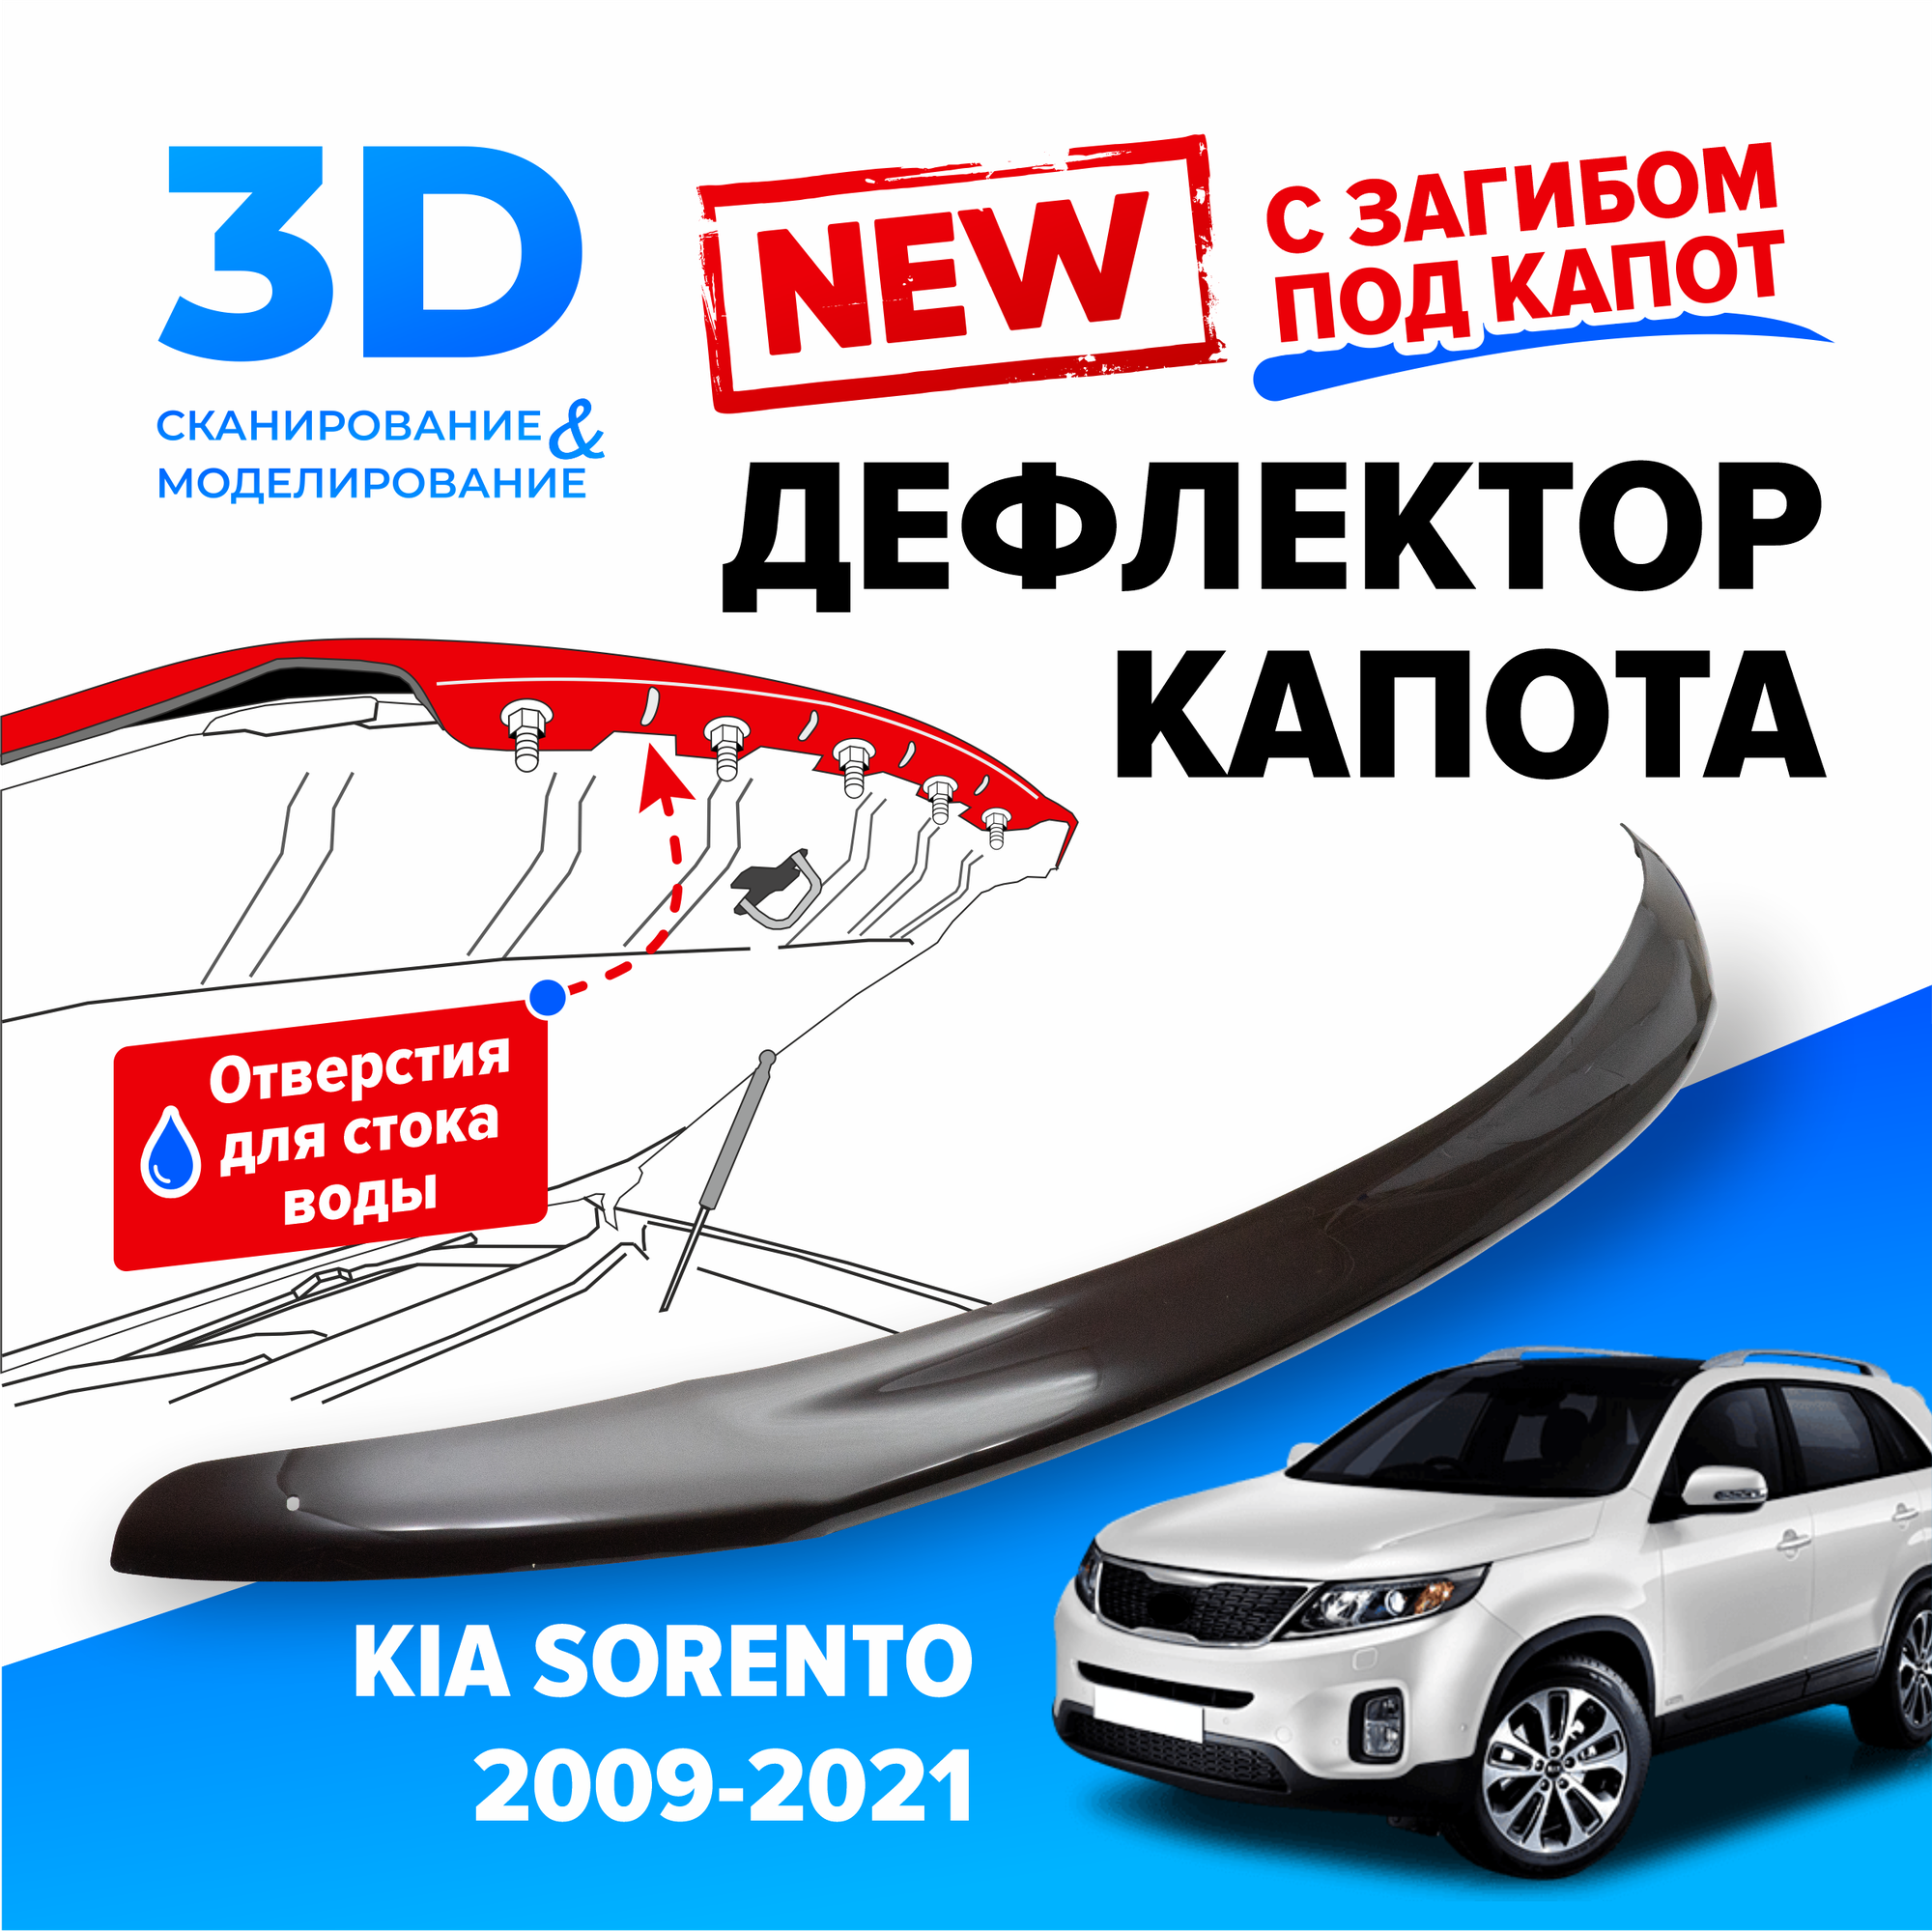 Дефлектор капота для автомобиля Kia Sorento (XM) (Киа Соренто) 2009-2021, с загибом, мухобойка, защита от сколов, Cobra Tuning